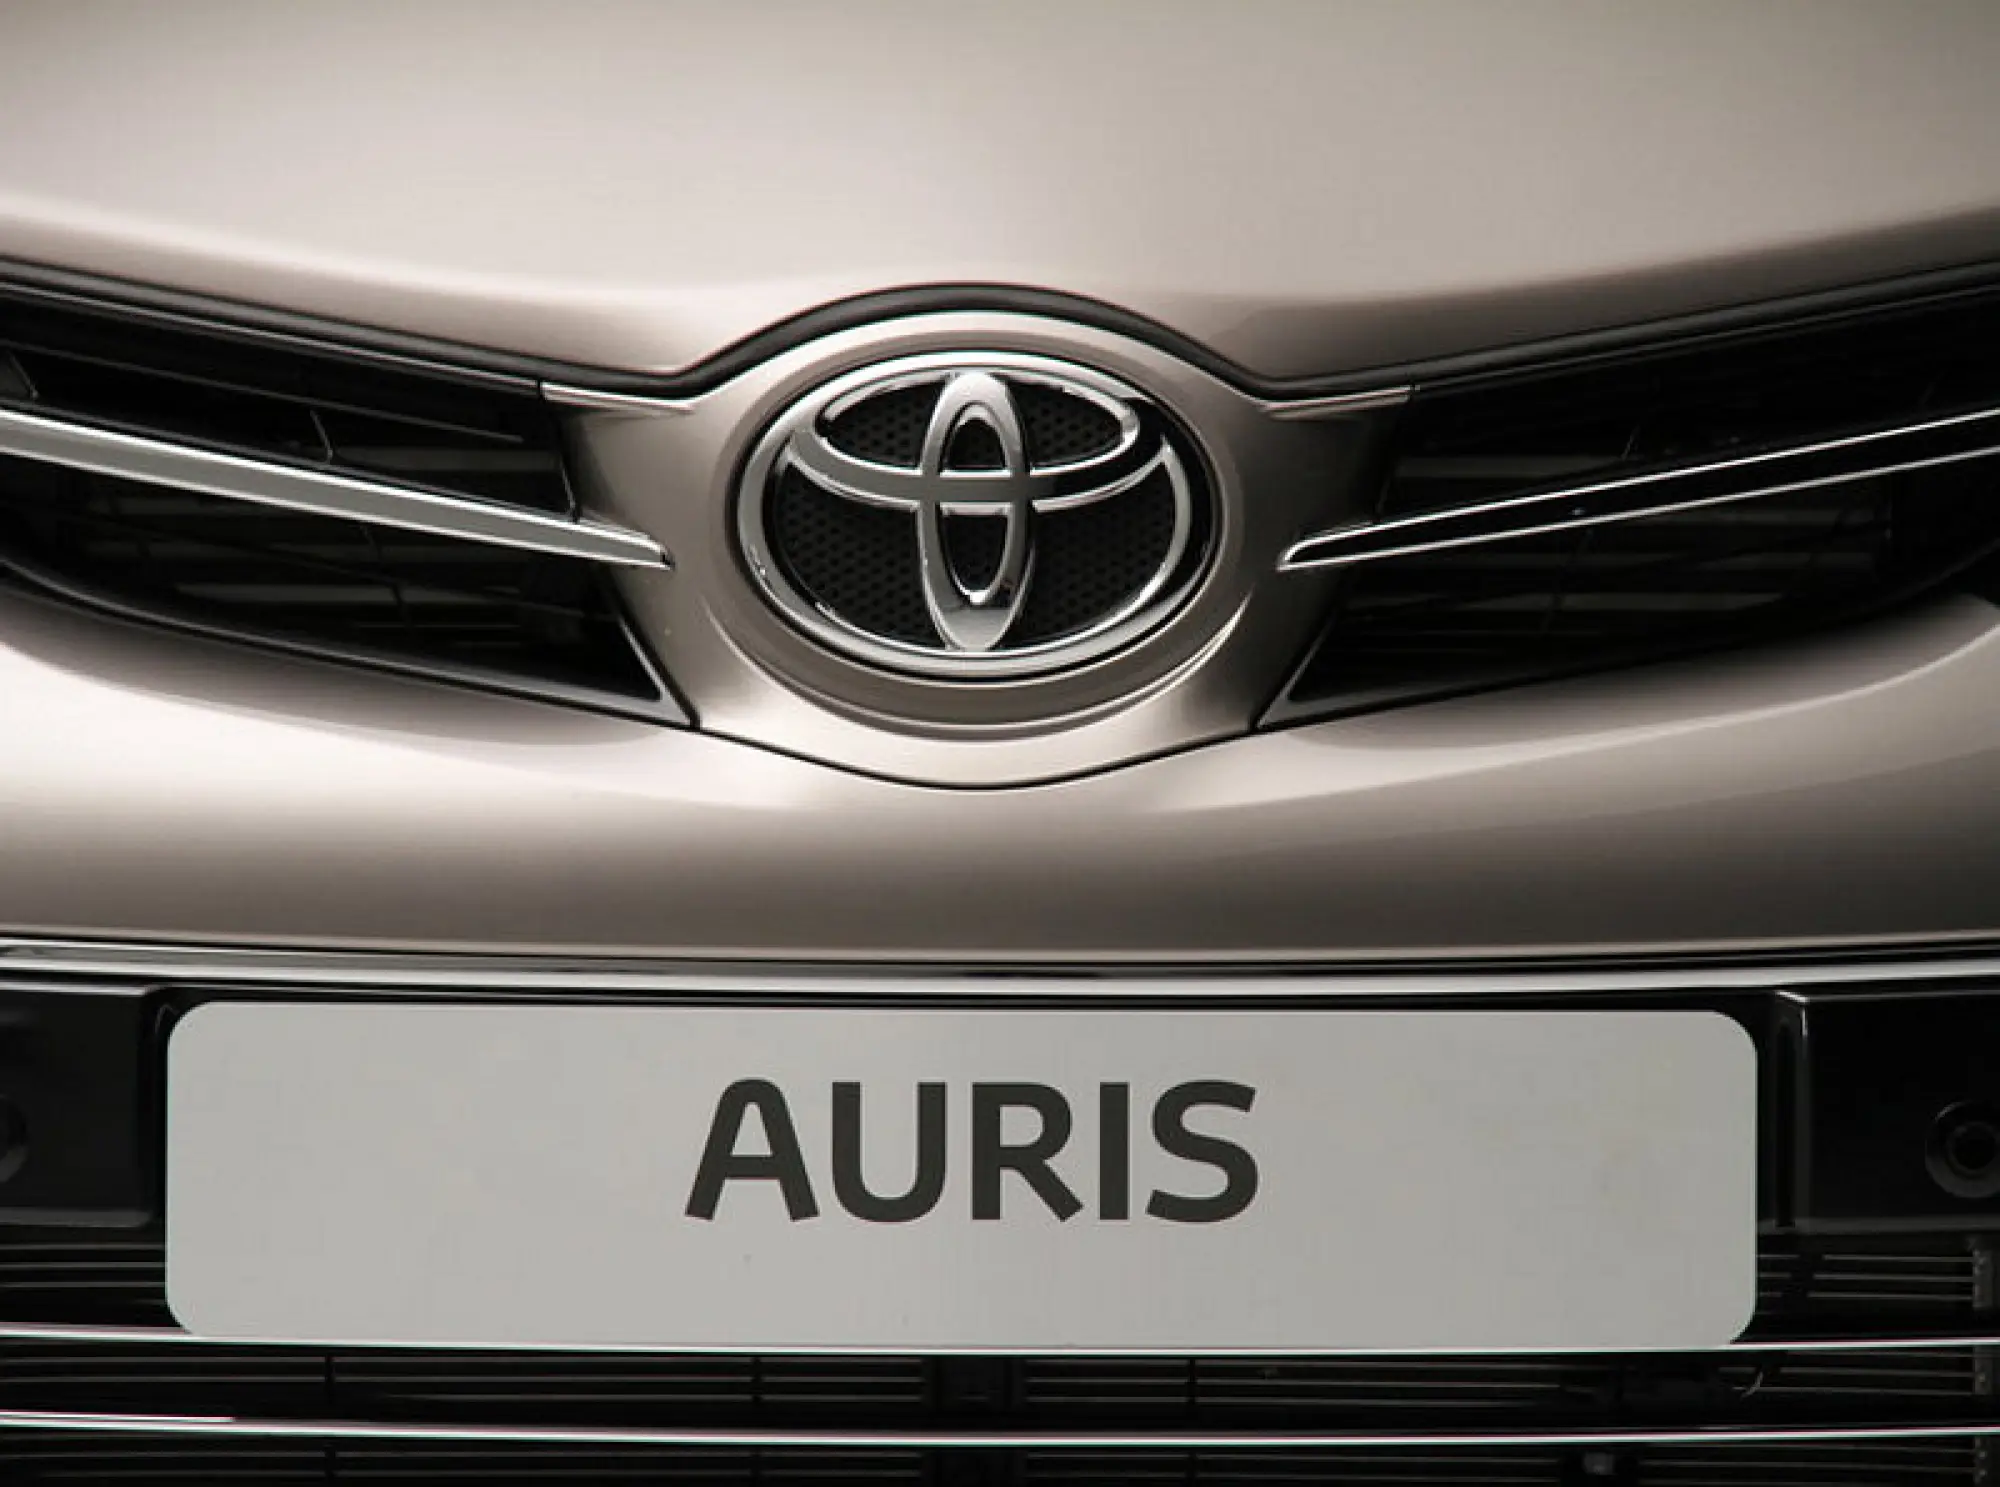 Toyota Auris 2013 foto ufficiali - 27